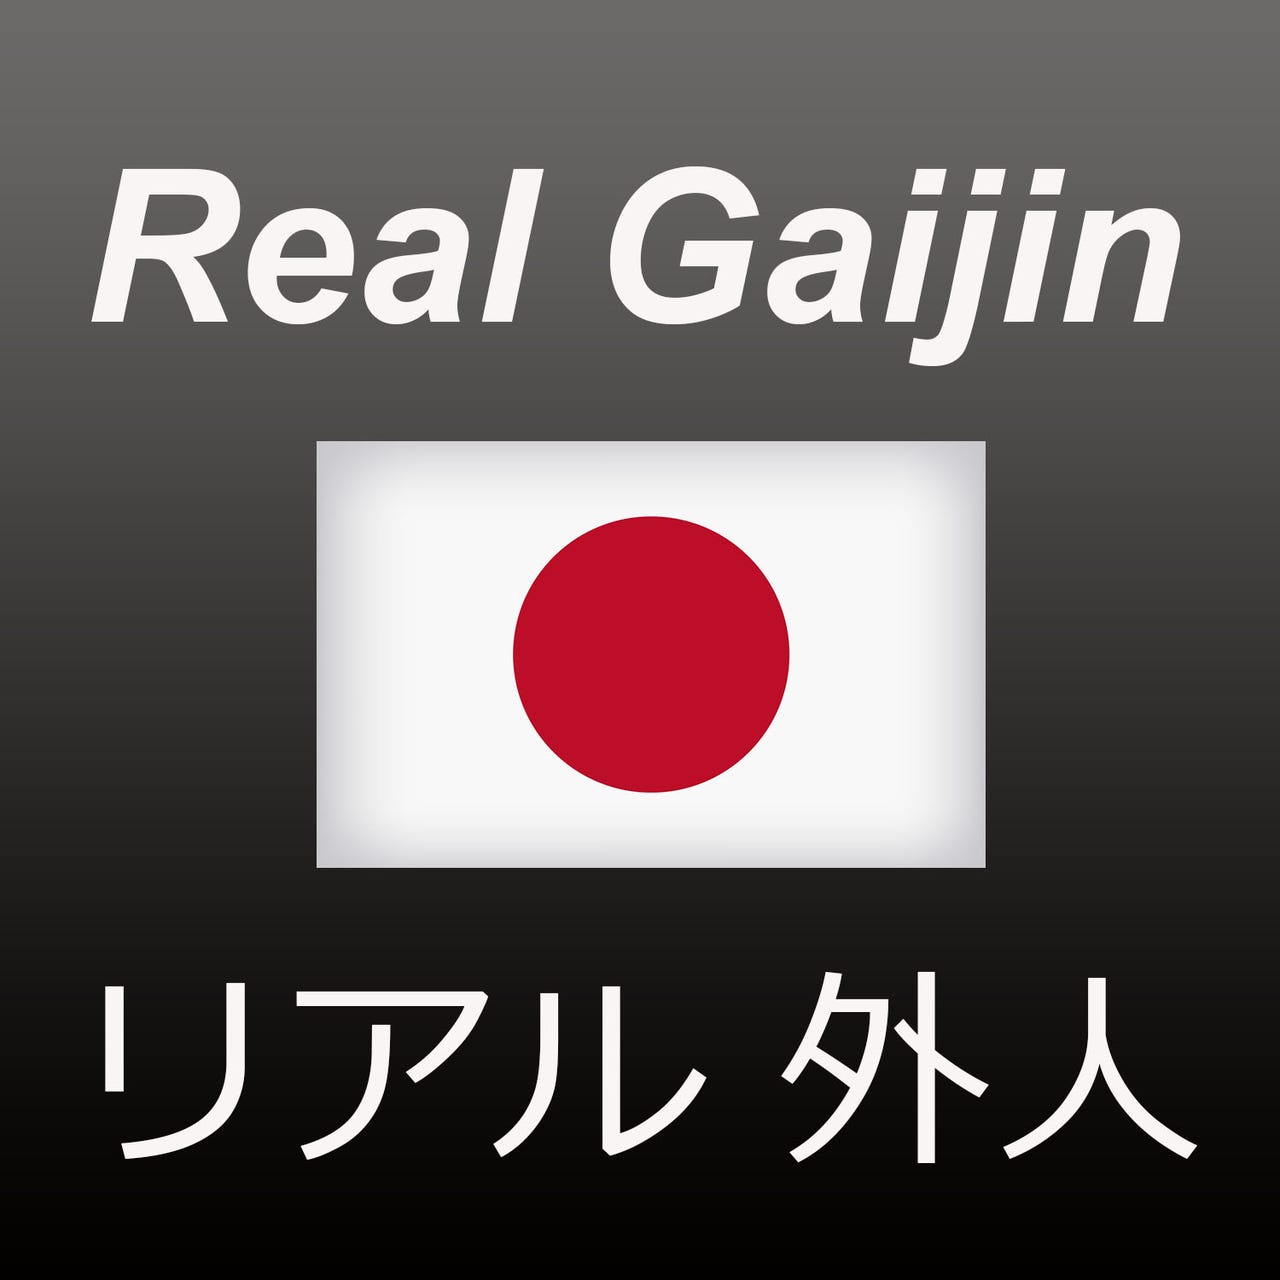 Artwork for Real Gaijin